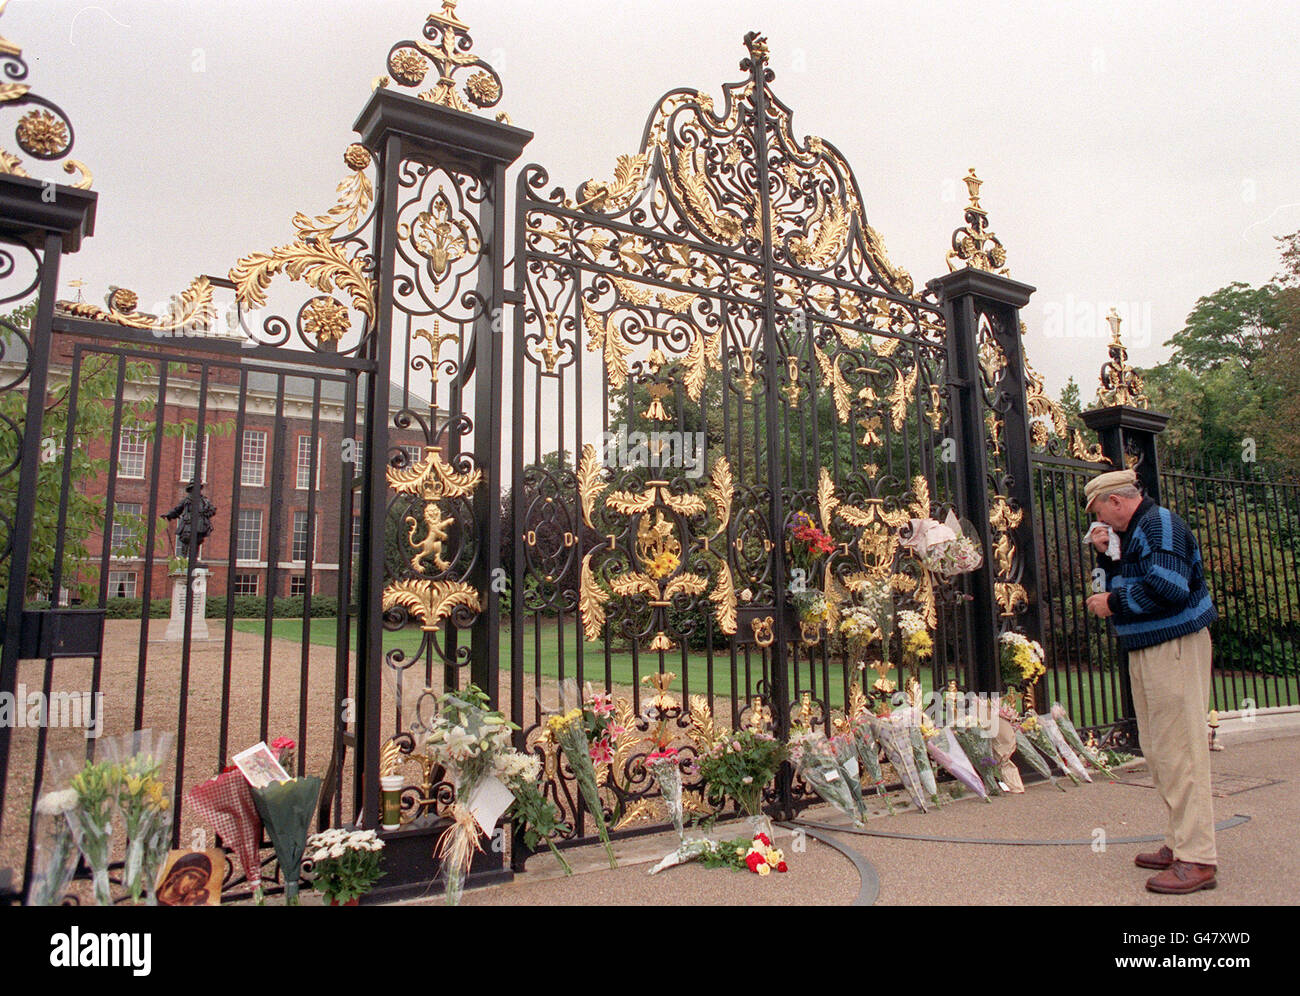 Ein Mann steht still, während er die Blumenbeute vor den Toren des Kensington Palace - der offiziellen Residenz von Diana, Prinzessin von Wales - heute Morgen (Sonntag) beobachtet. Stockfoto